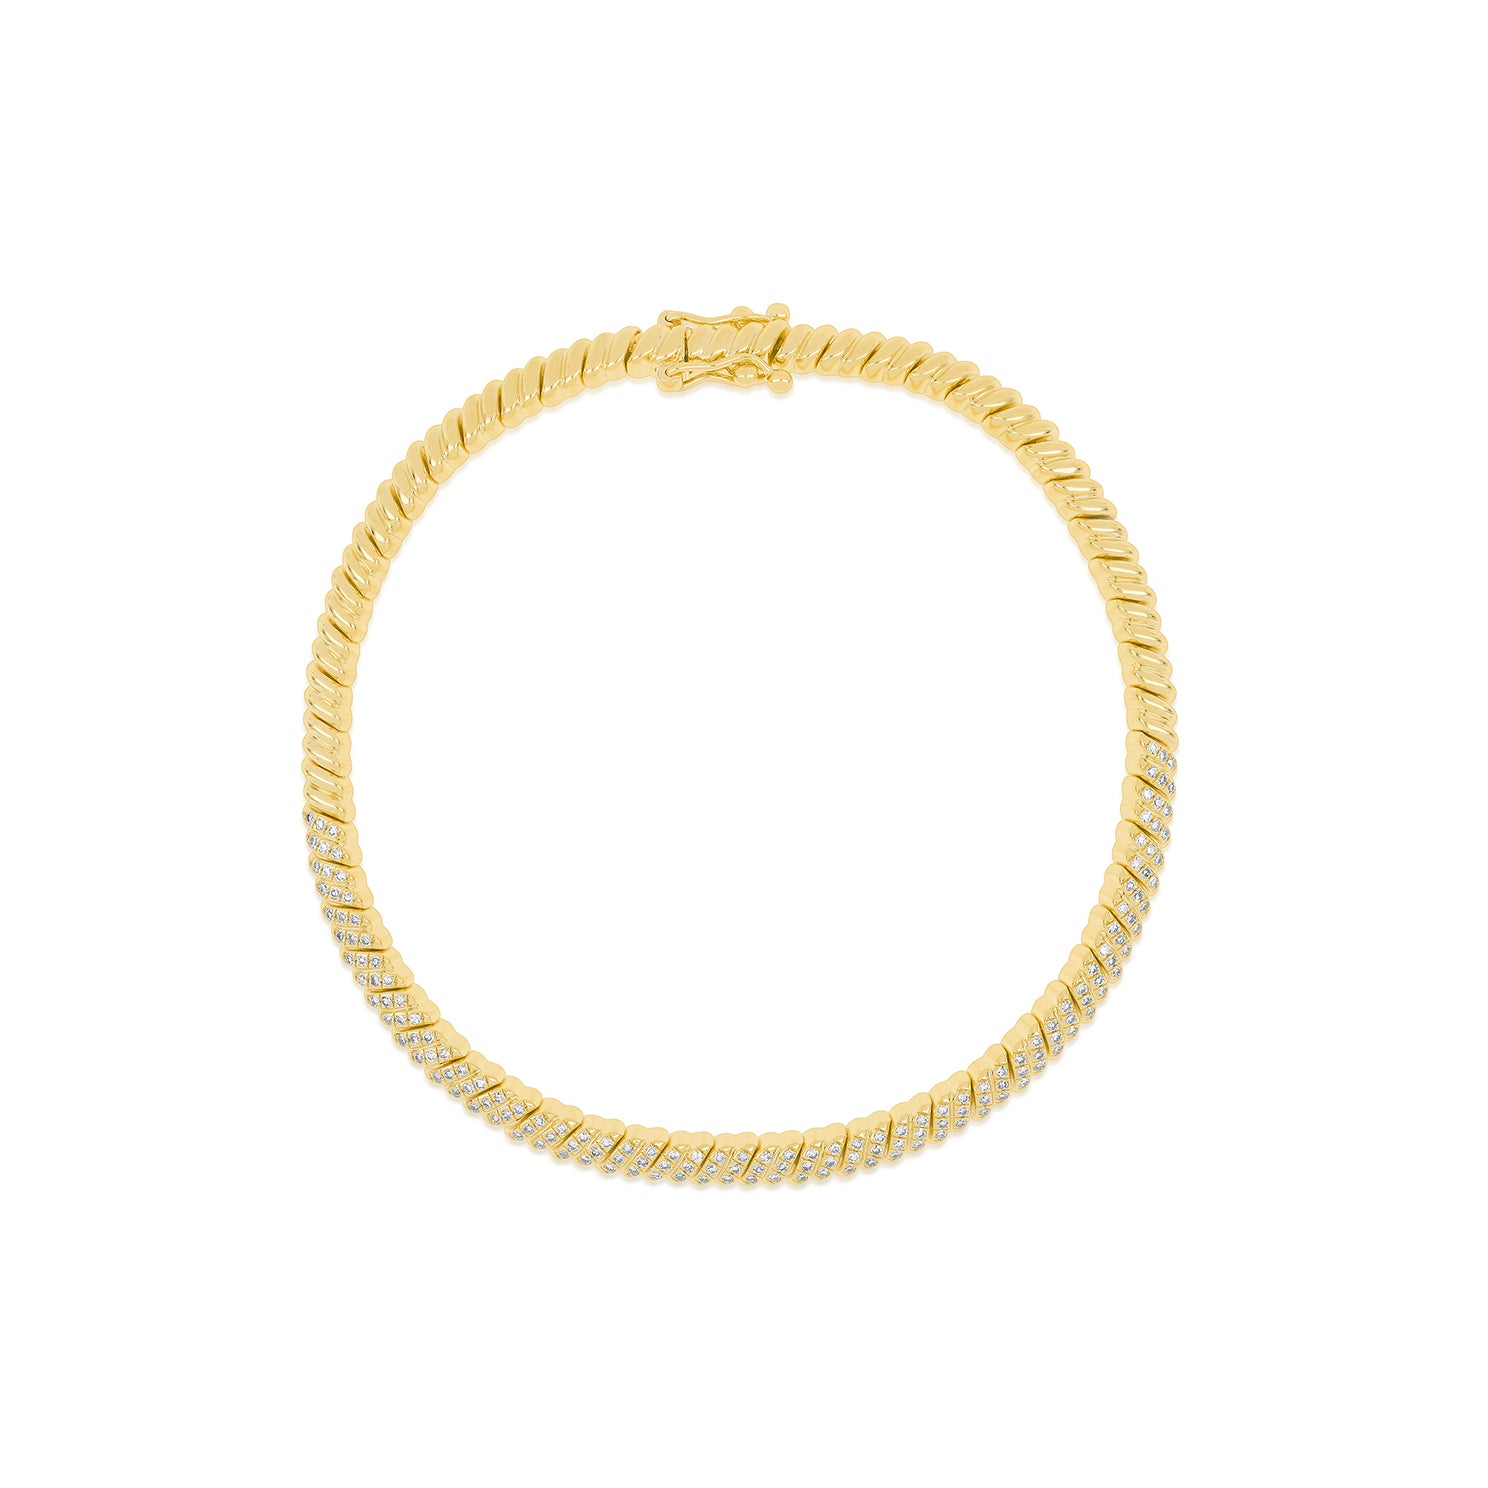 Diamond Twist Bracelet in 14k yellow gold